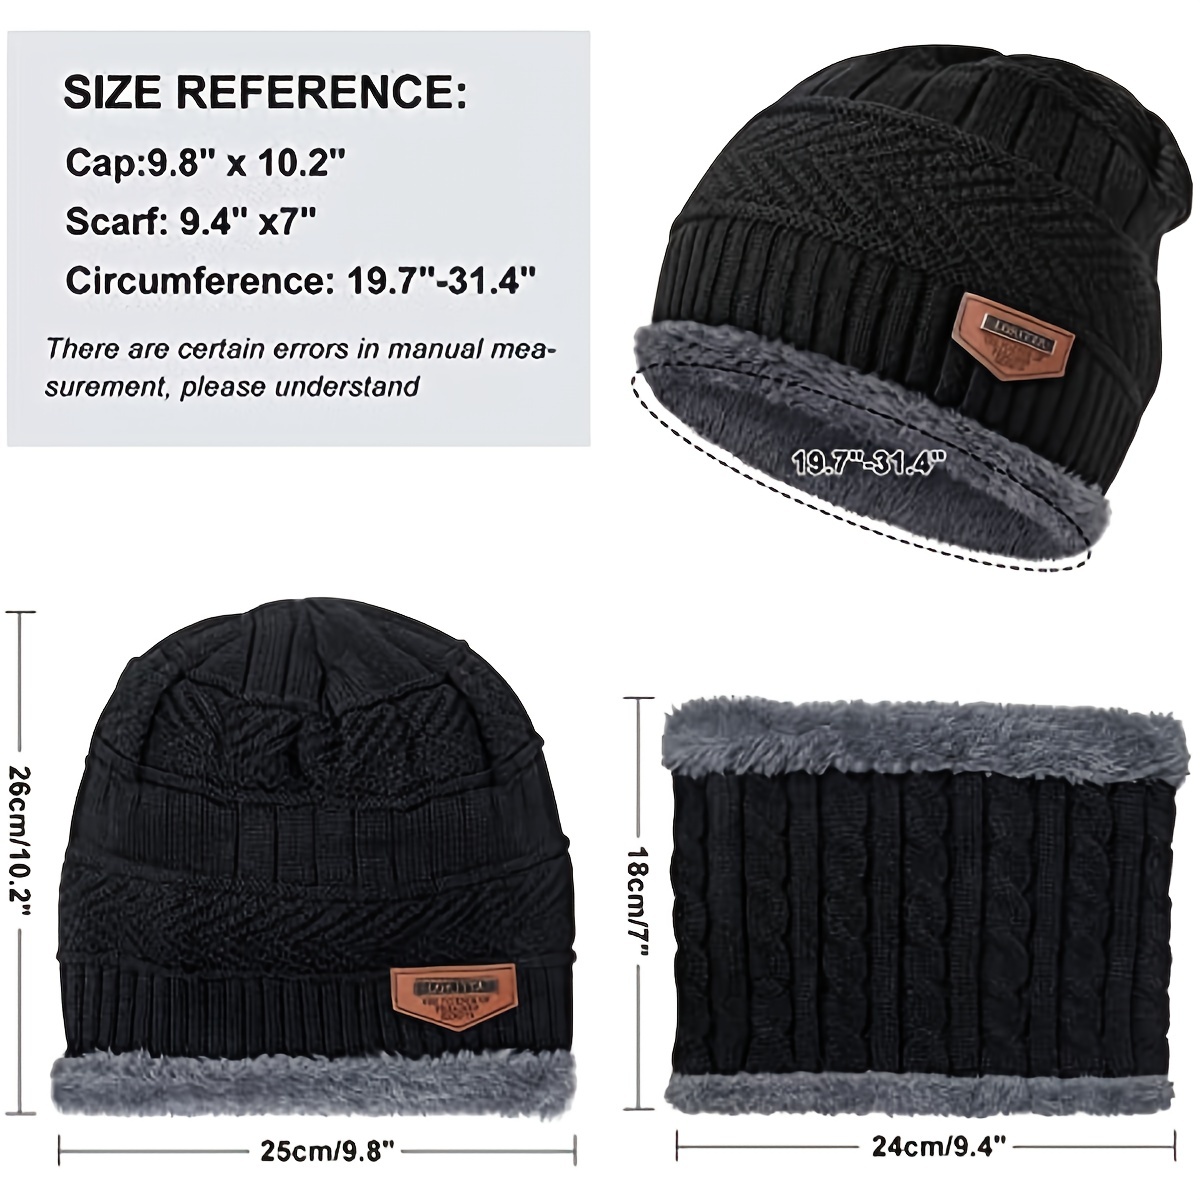 Acheter 3 pièces/ensemble unisexe hiver bonnet chapeau écharpe gants  ensemble chaud polaire doublure tricot chapeau écran tactile gants cou  écharpe ensemble